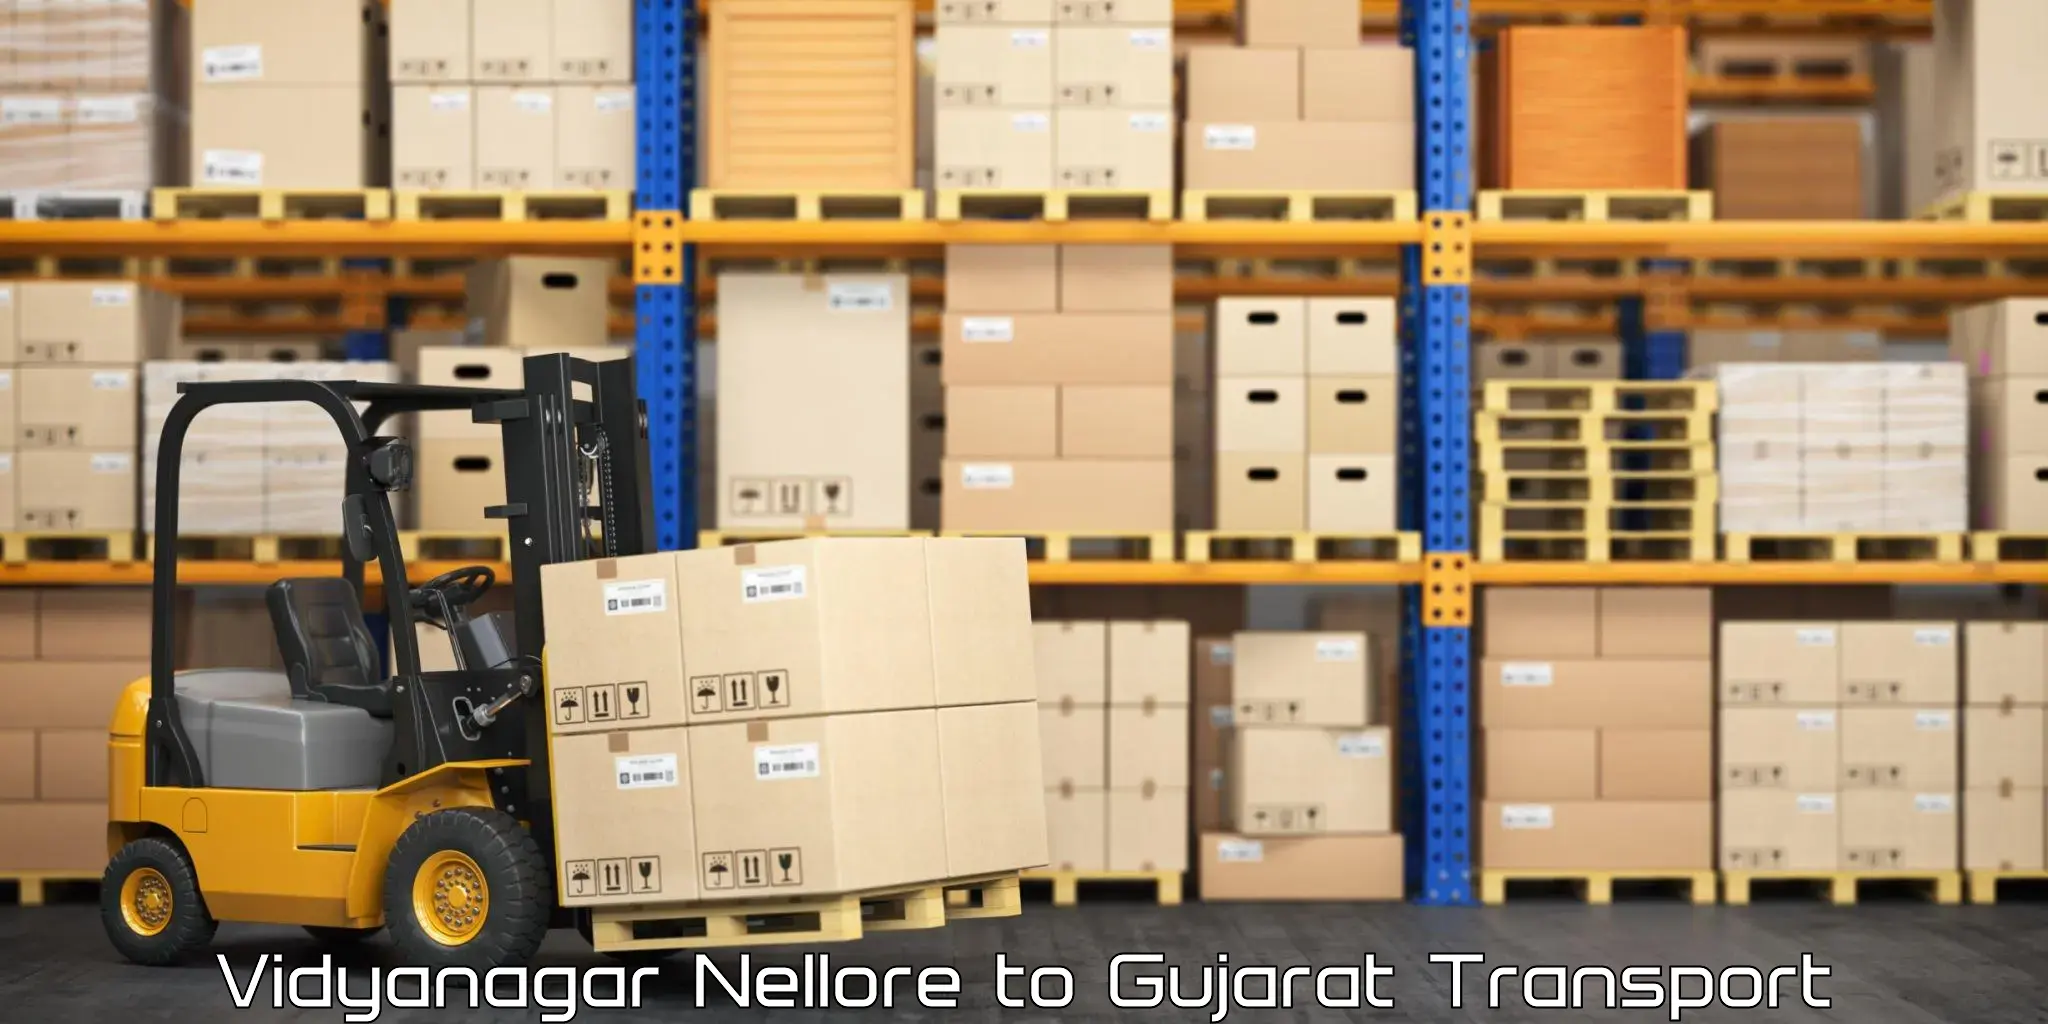 Cargo transportation services Vidyanagar Nellore to Narmada Gujarat